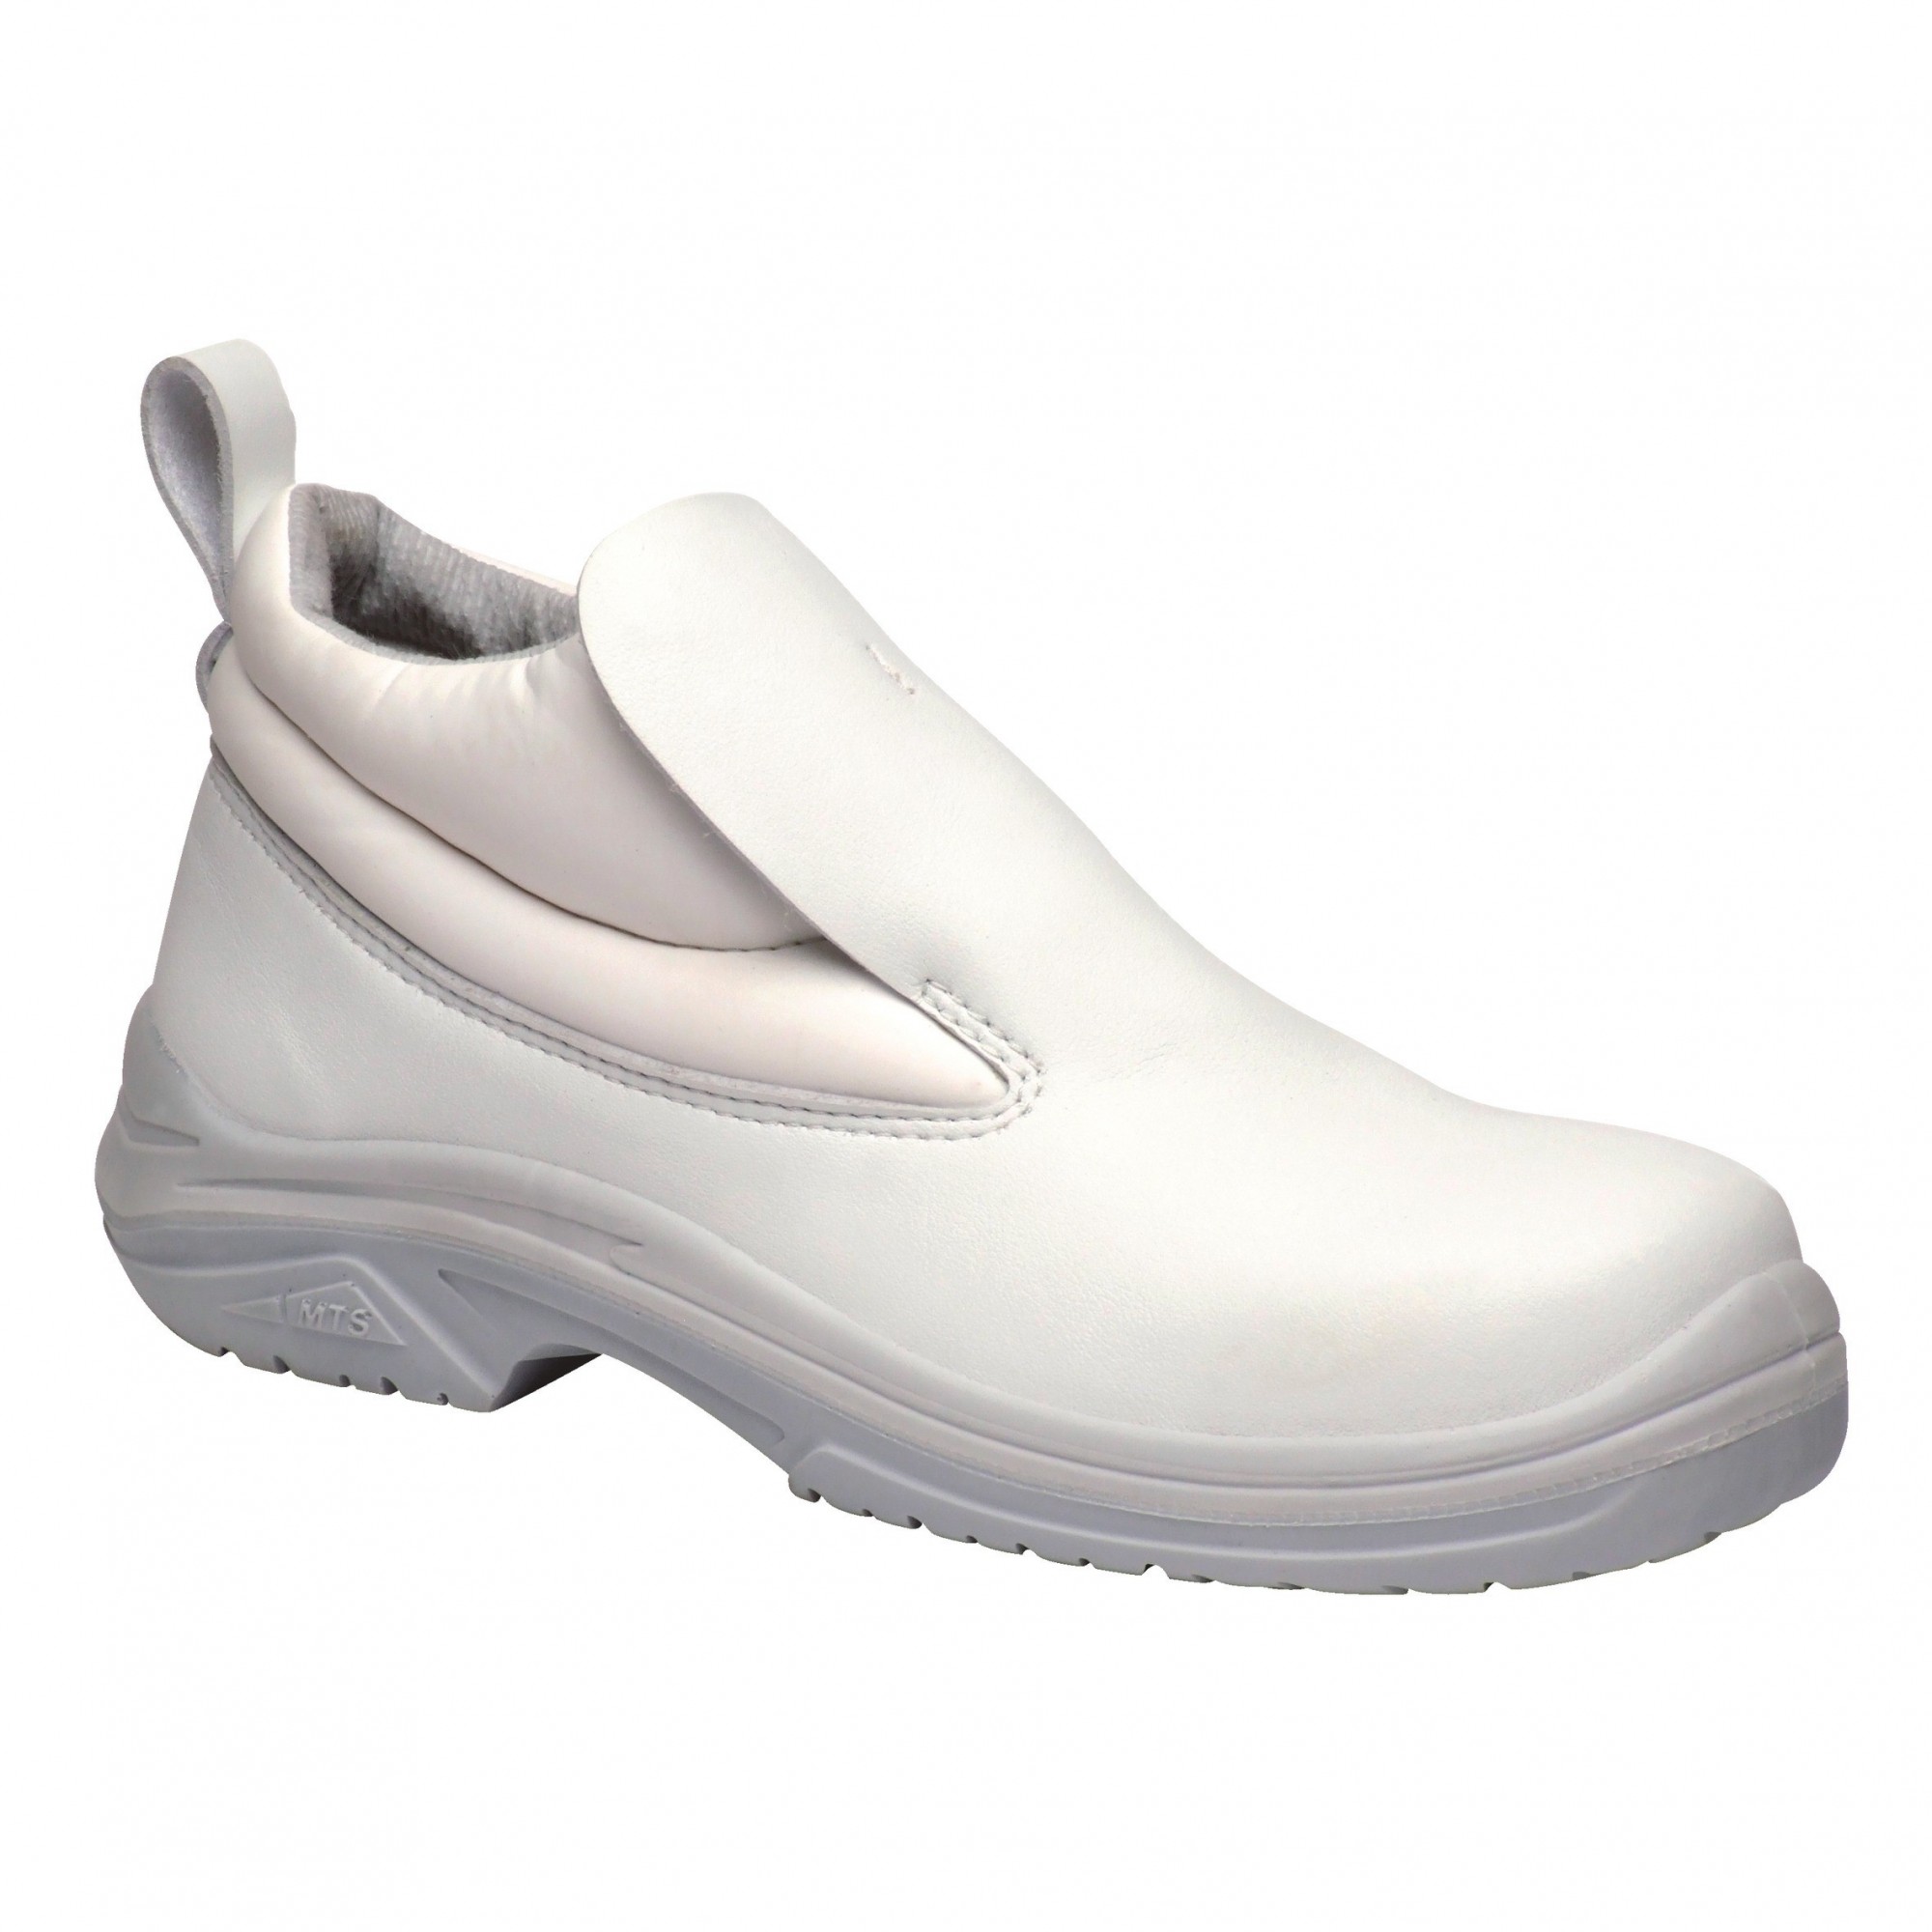 Chaussure de sécurité montante blanche amagnétique Andros S2 - MTS